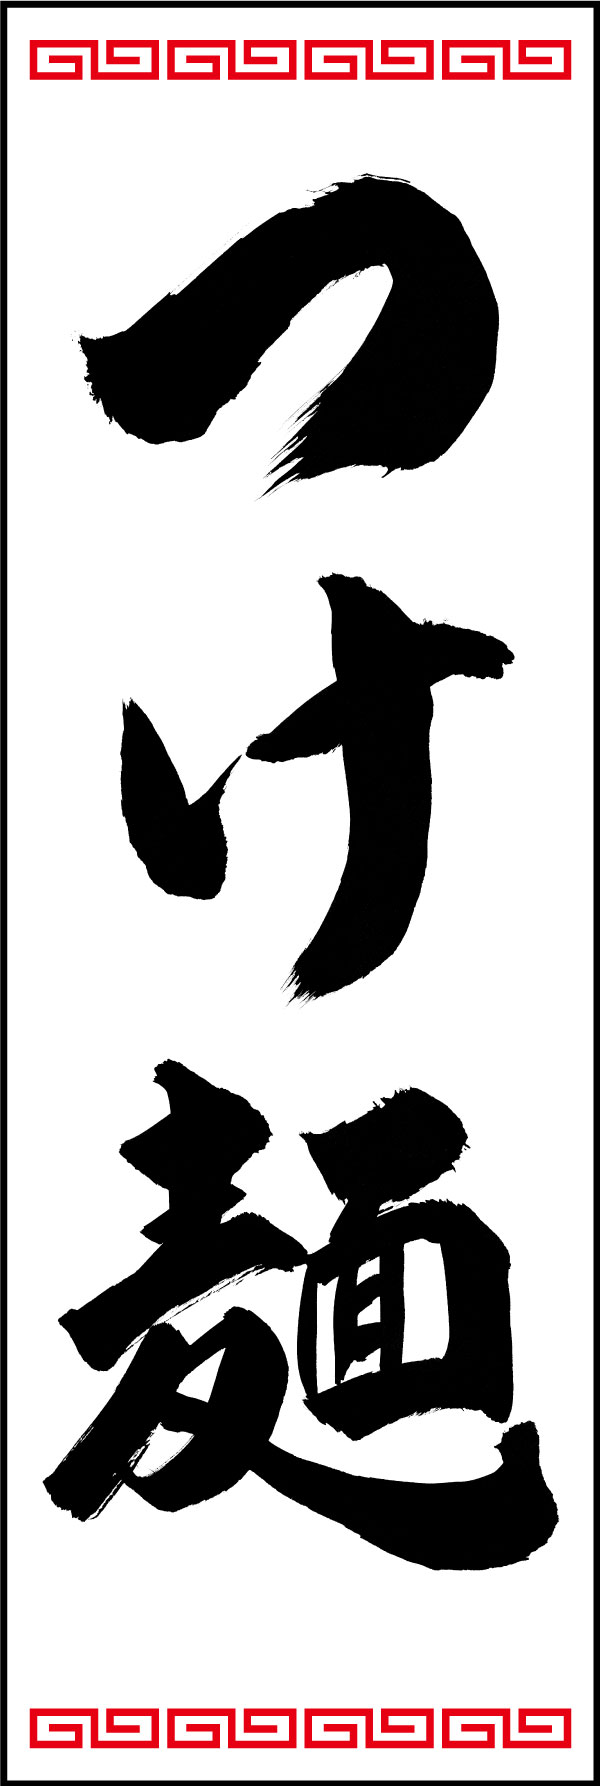 つけ麺 139_06 「つけ麺」の幟です。江戸文字職人 加藤木大介氏による、手書きの筆文字です。完全書き下ろし、唯一無二の幟は当店だけのオリジナル商品です。（Y.M）